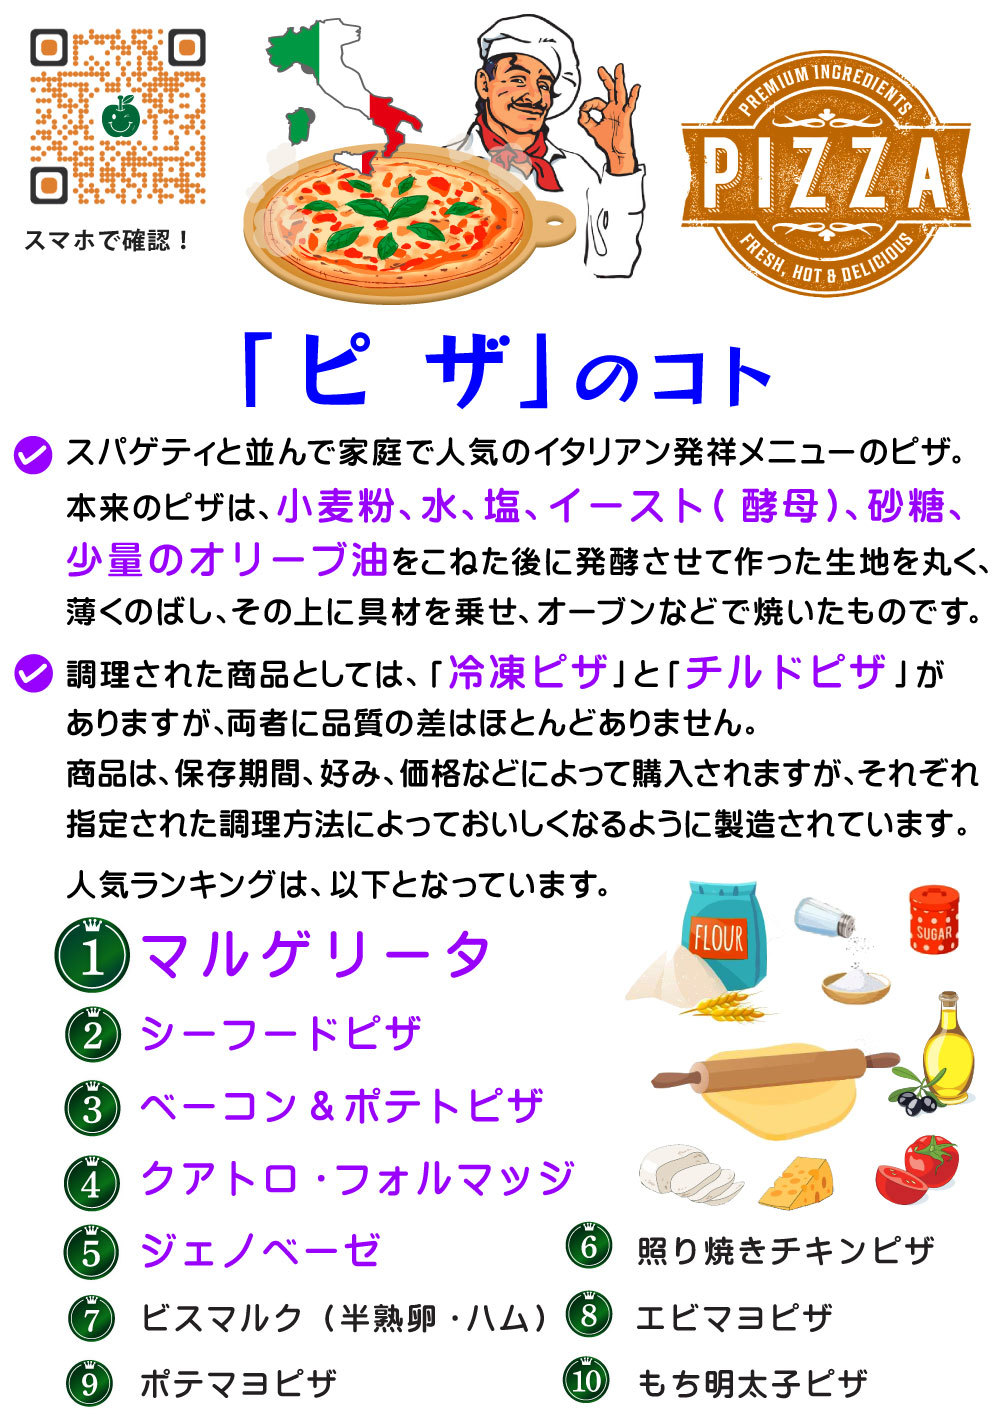 7~8_V101-ピザのコト-(カラー)1